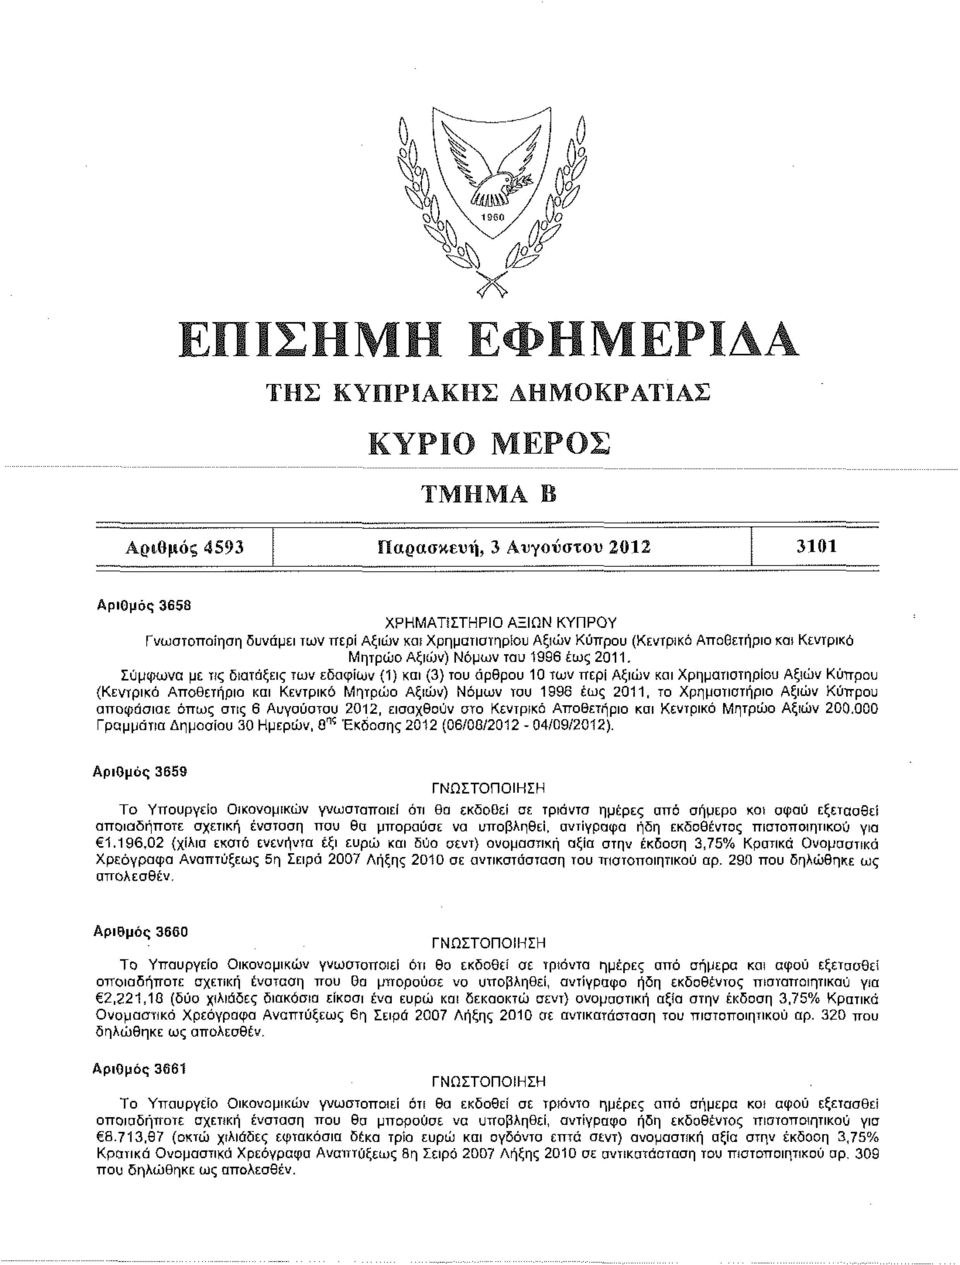 Σύμφωνα με τις διατάξεις των εδαφίων (1) και (3) του άρθρου 10 των περί Αξιών και Χρηματιστηρίου Αξιών Κύπρου (Κεντρικό Αποθετήριο και Κεντρικό Μητρώο Αξιών) Νόμων του 1996 έως 2011, το Χρηματιστήριο